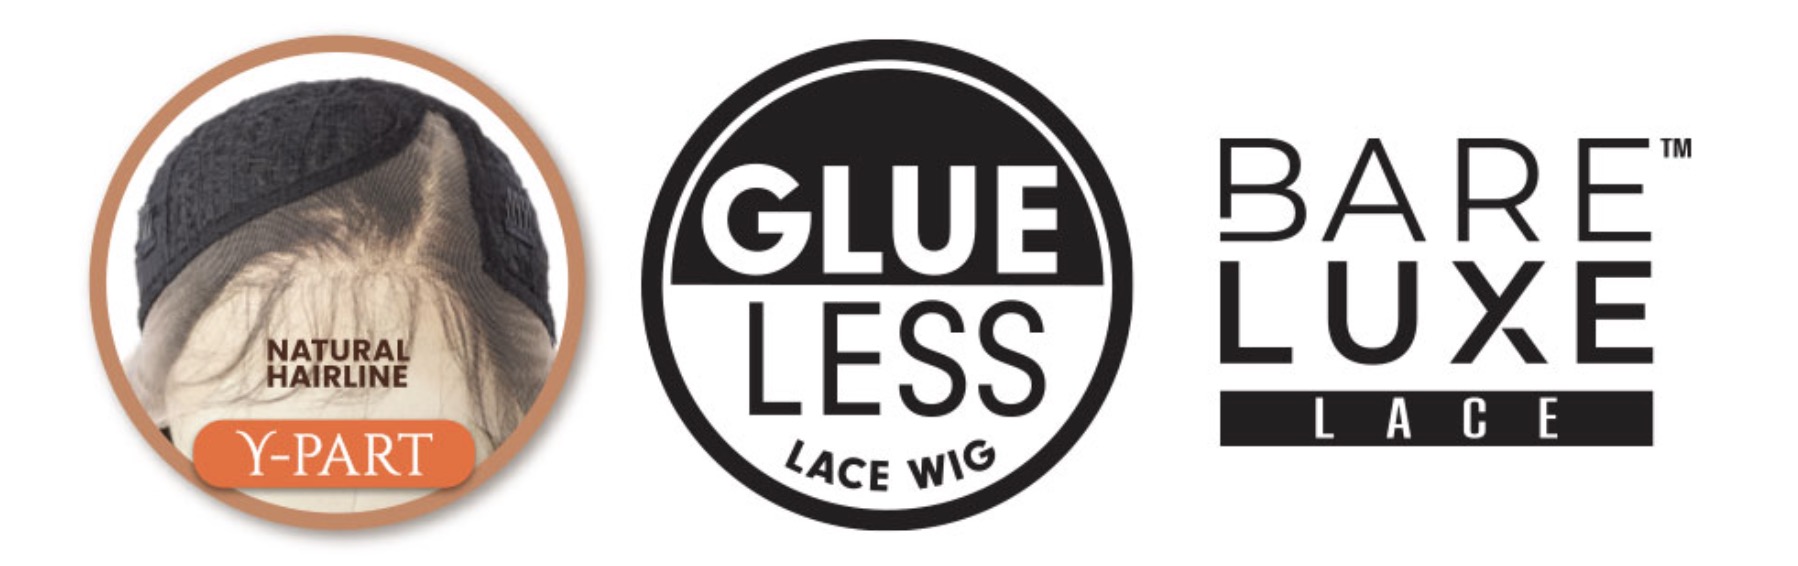 Sensationnel Glueless Bare Luxe Lace Wig - Y-Part Casia